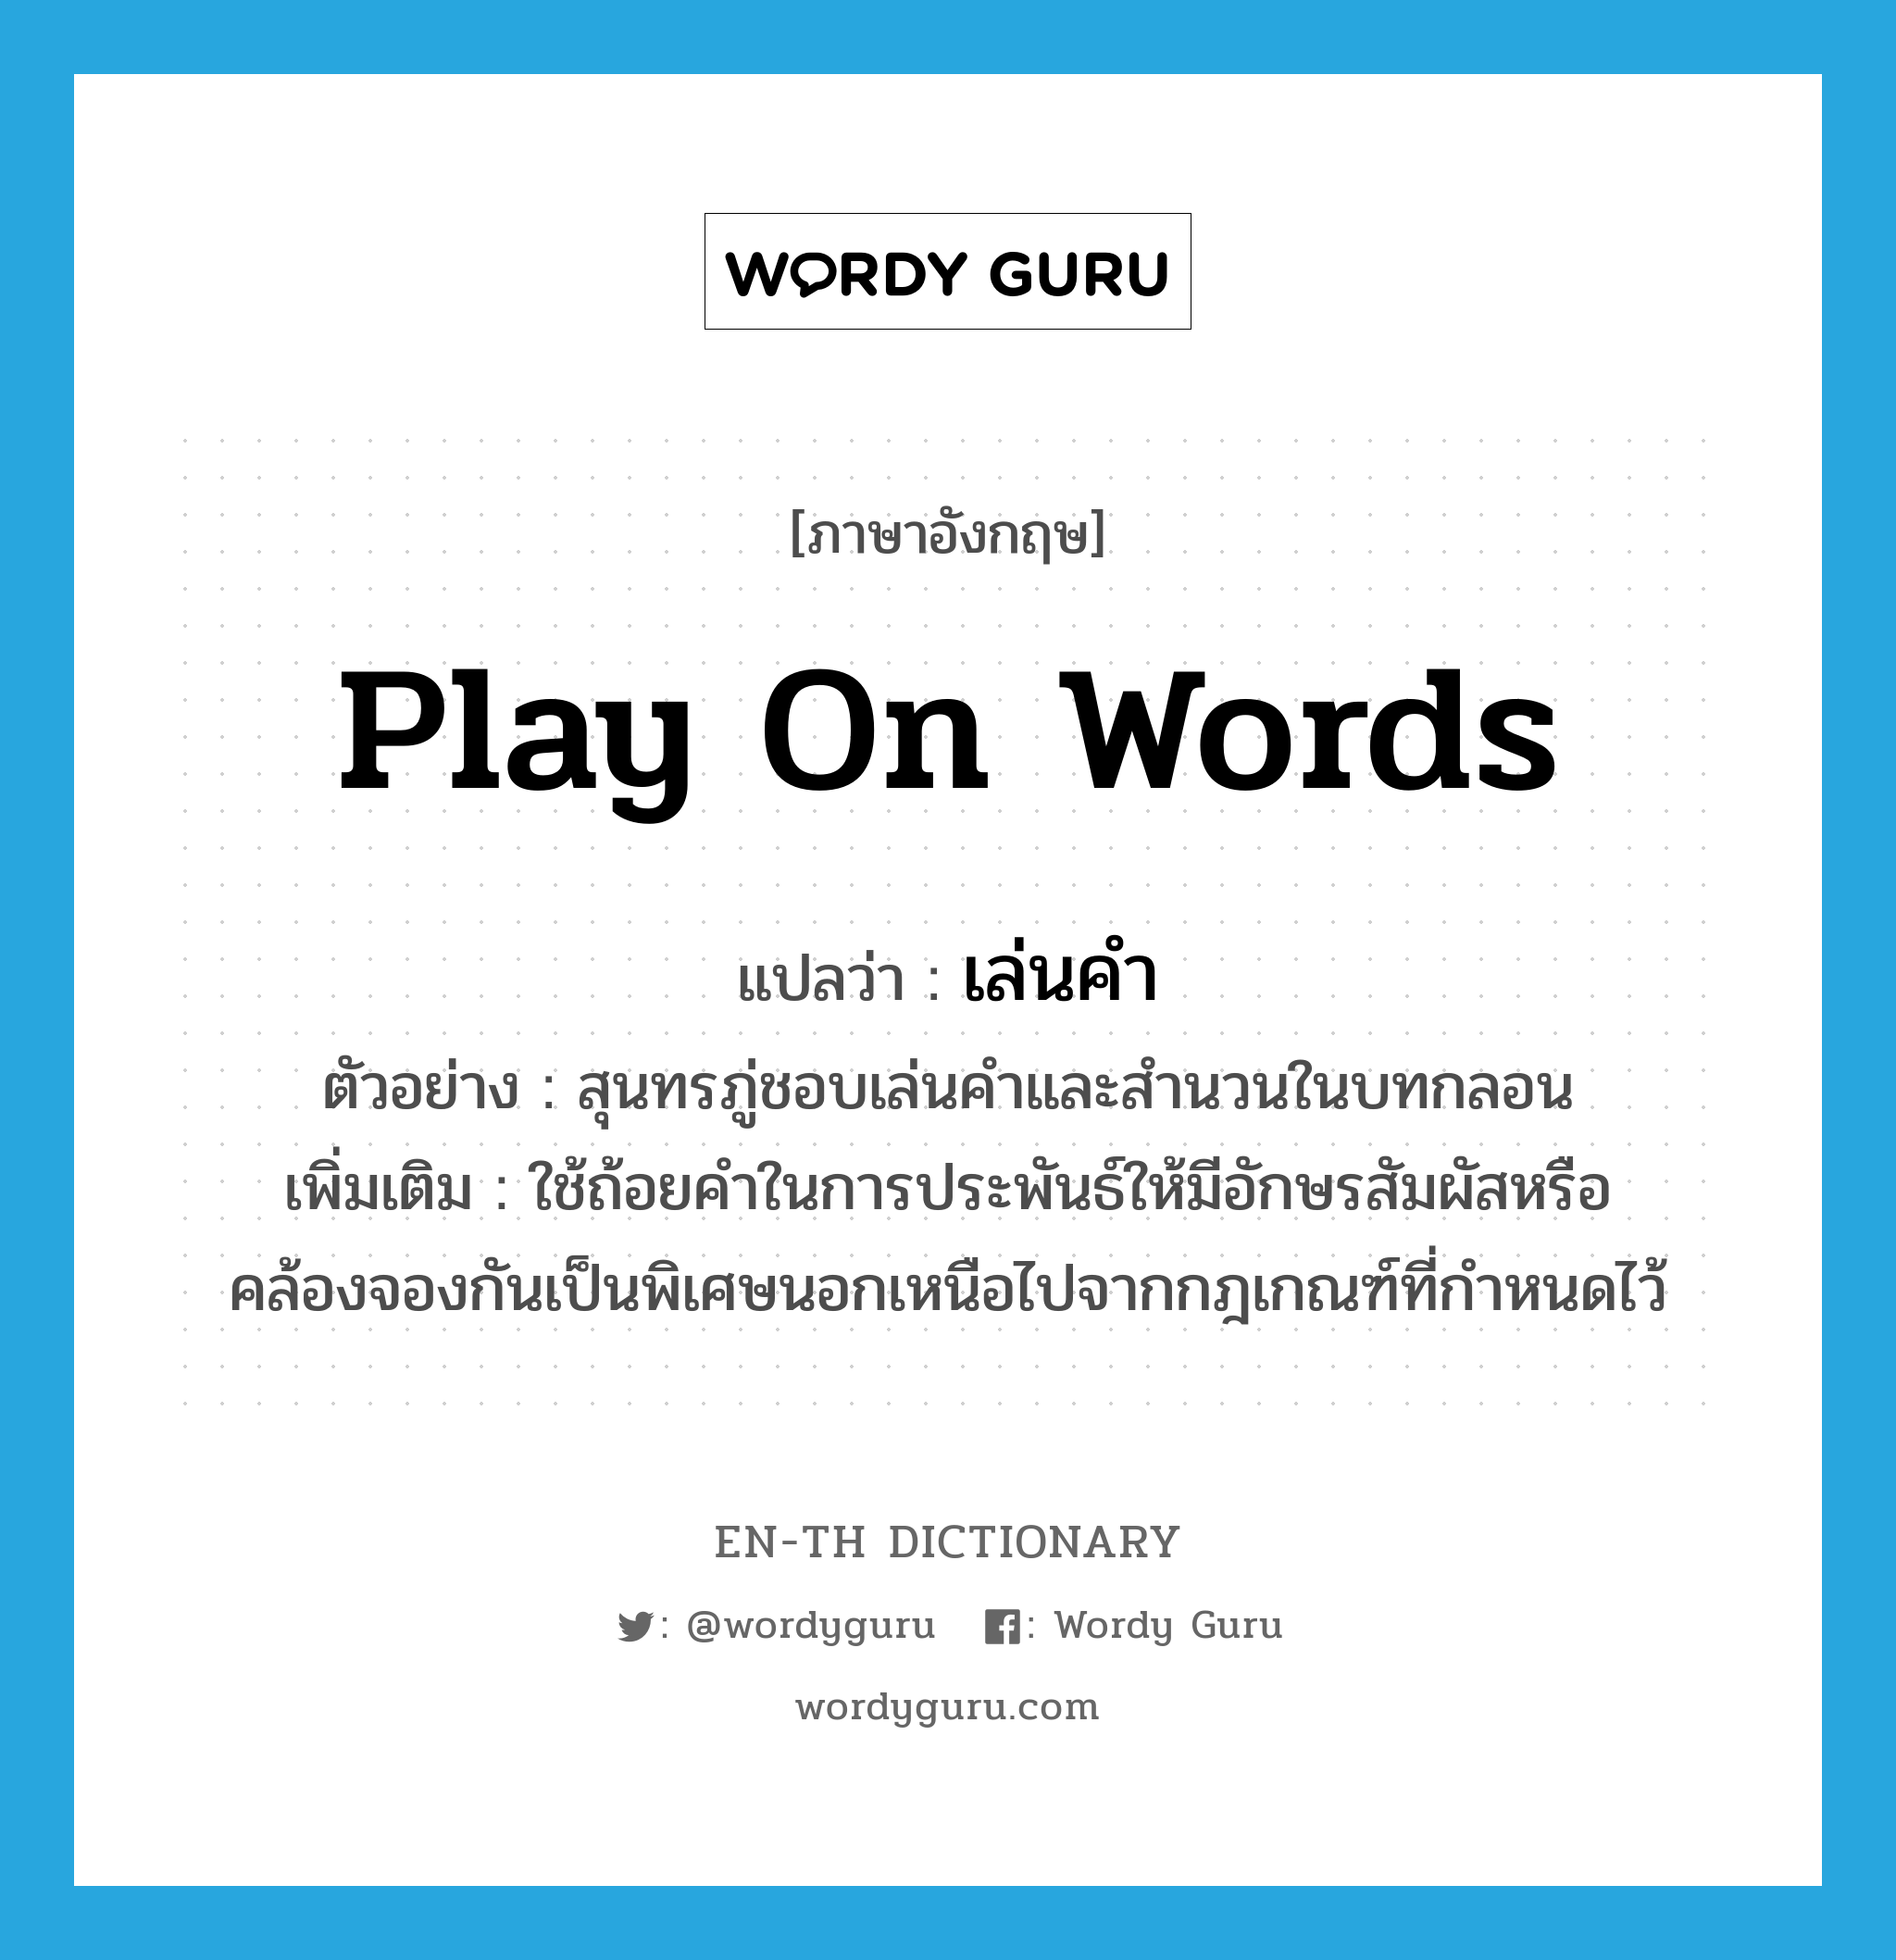 play on words แปลว่า?, คำศัพท์ภาษาอังกฤษ play on words แปลว่า เล่นคำ ประเภท V ตัวอย่าง สุนทรภู่ชอบเล่นคำและสำนวนในบทกลอน เพิ่มเติม ใช้ถ้อยคำในการประพันธ์ให้มีอักษรสัมผัสหรือคล้องจองกันเป็นพิเศษนอกเหนือไปจากกฎเกณฑ์ที่กำหนดไว้ หมวด V